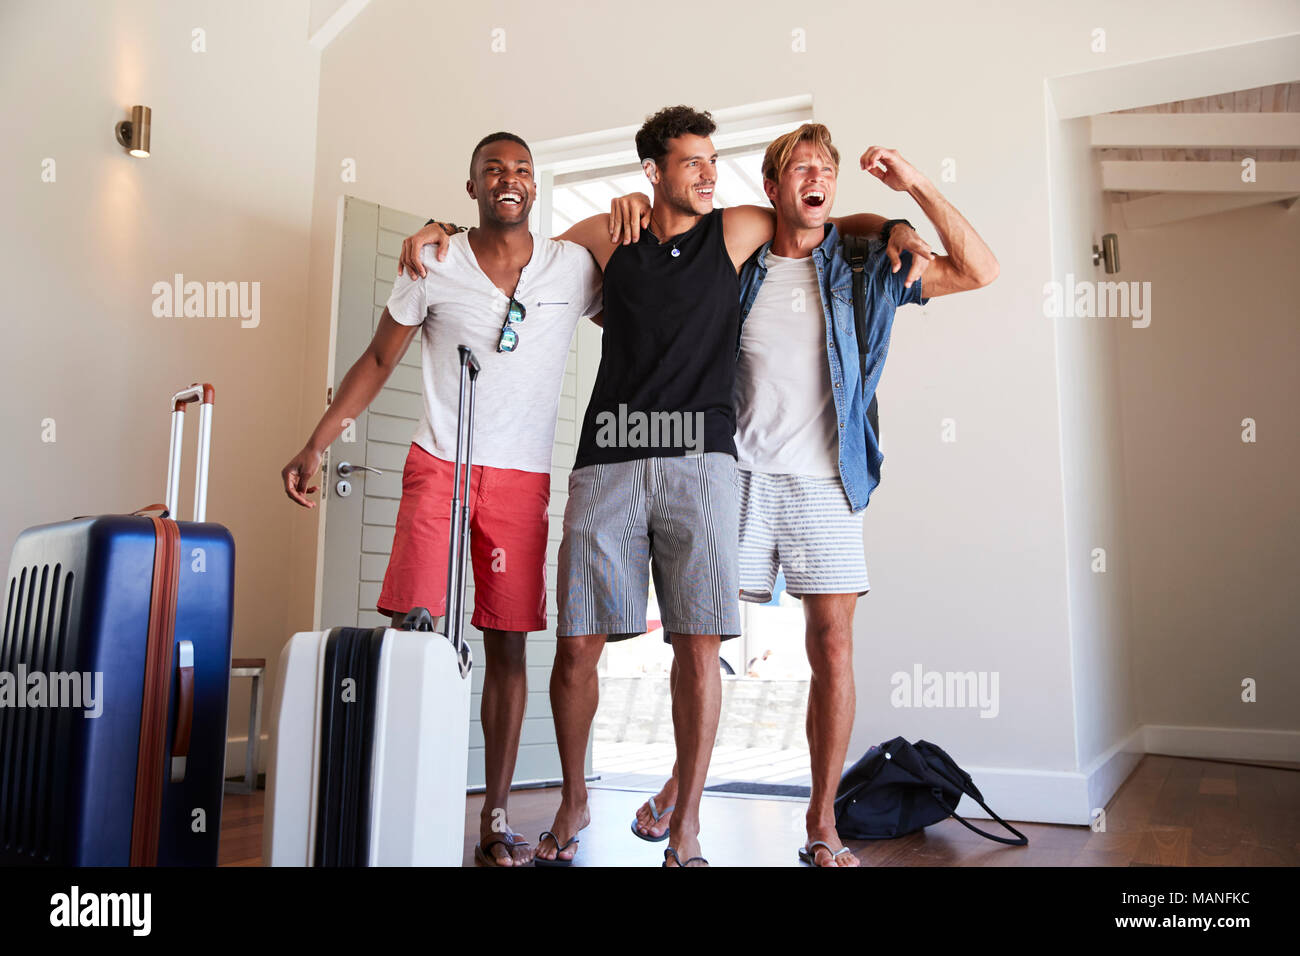 Grupo de Amigos varones que llegan en el Verano Alquiler de vacaciones Foto de stock